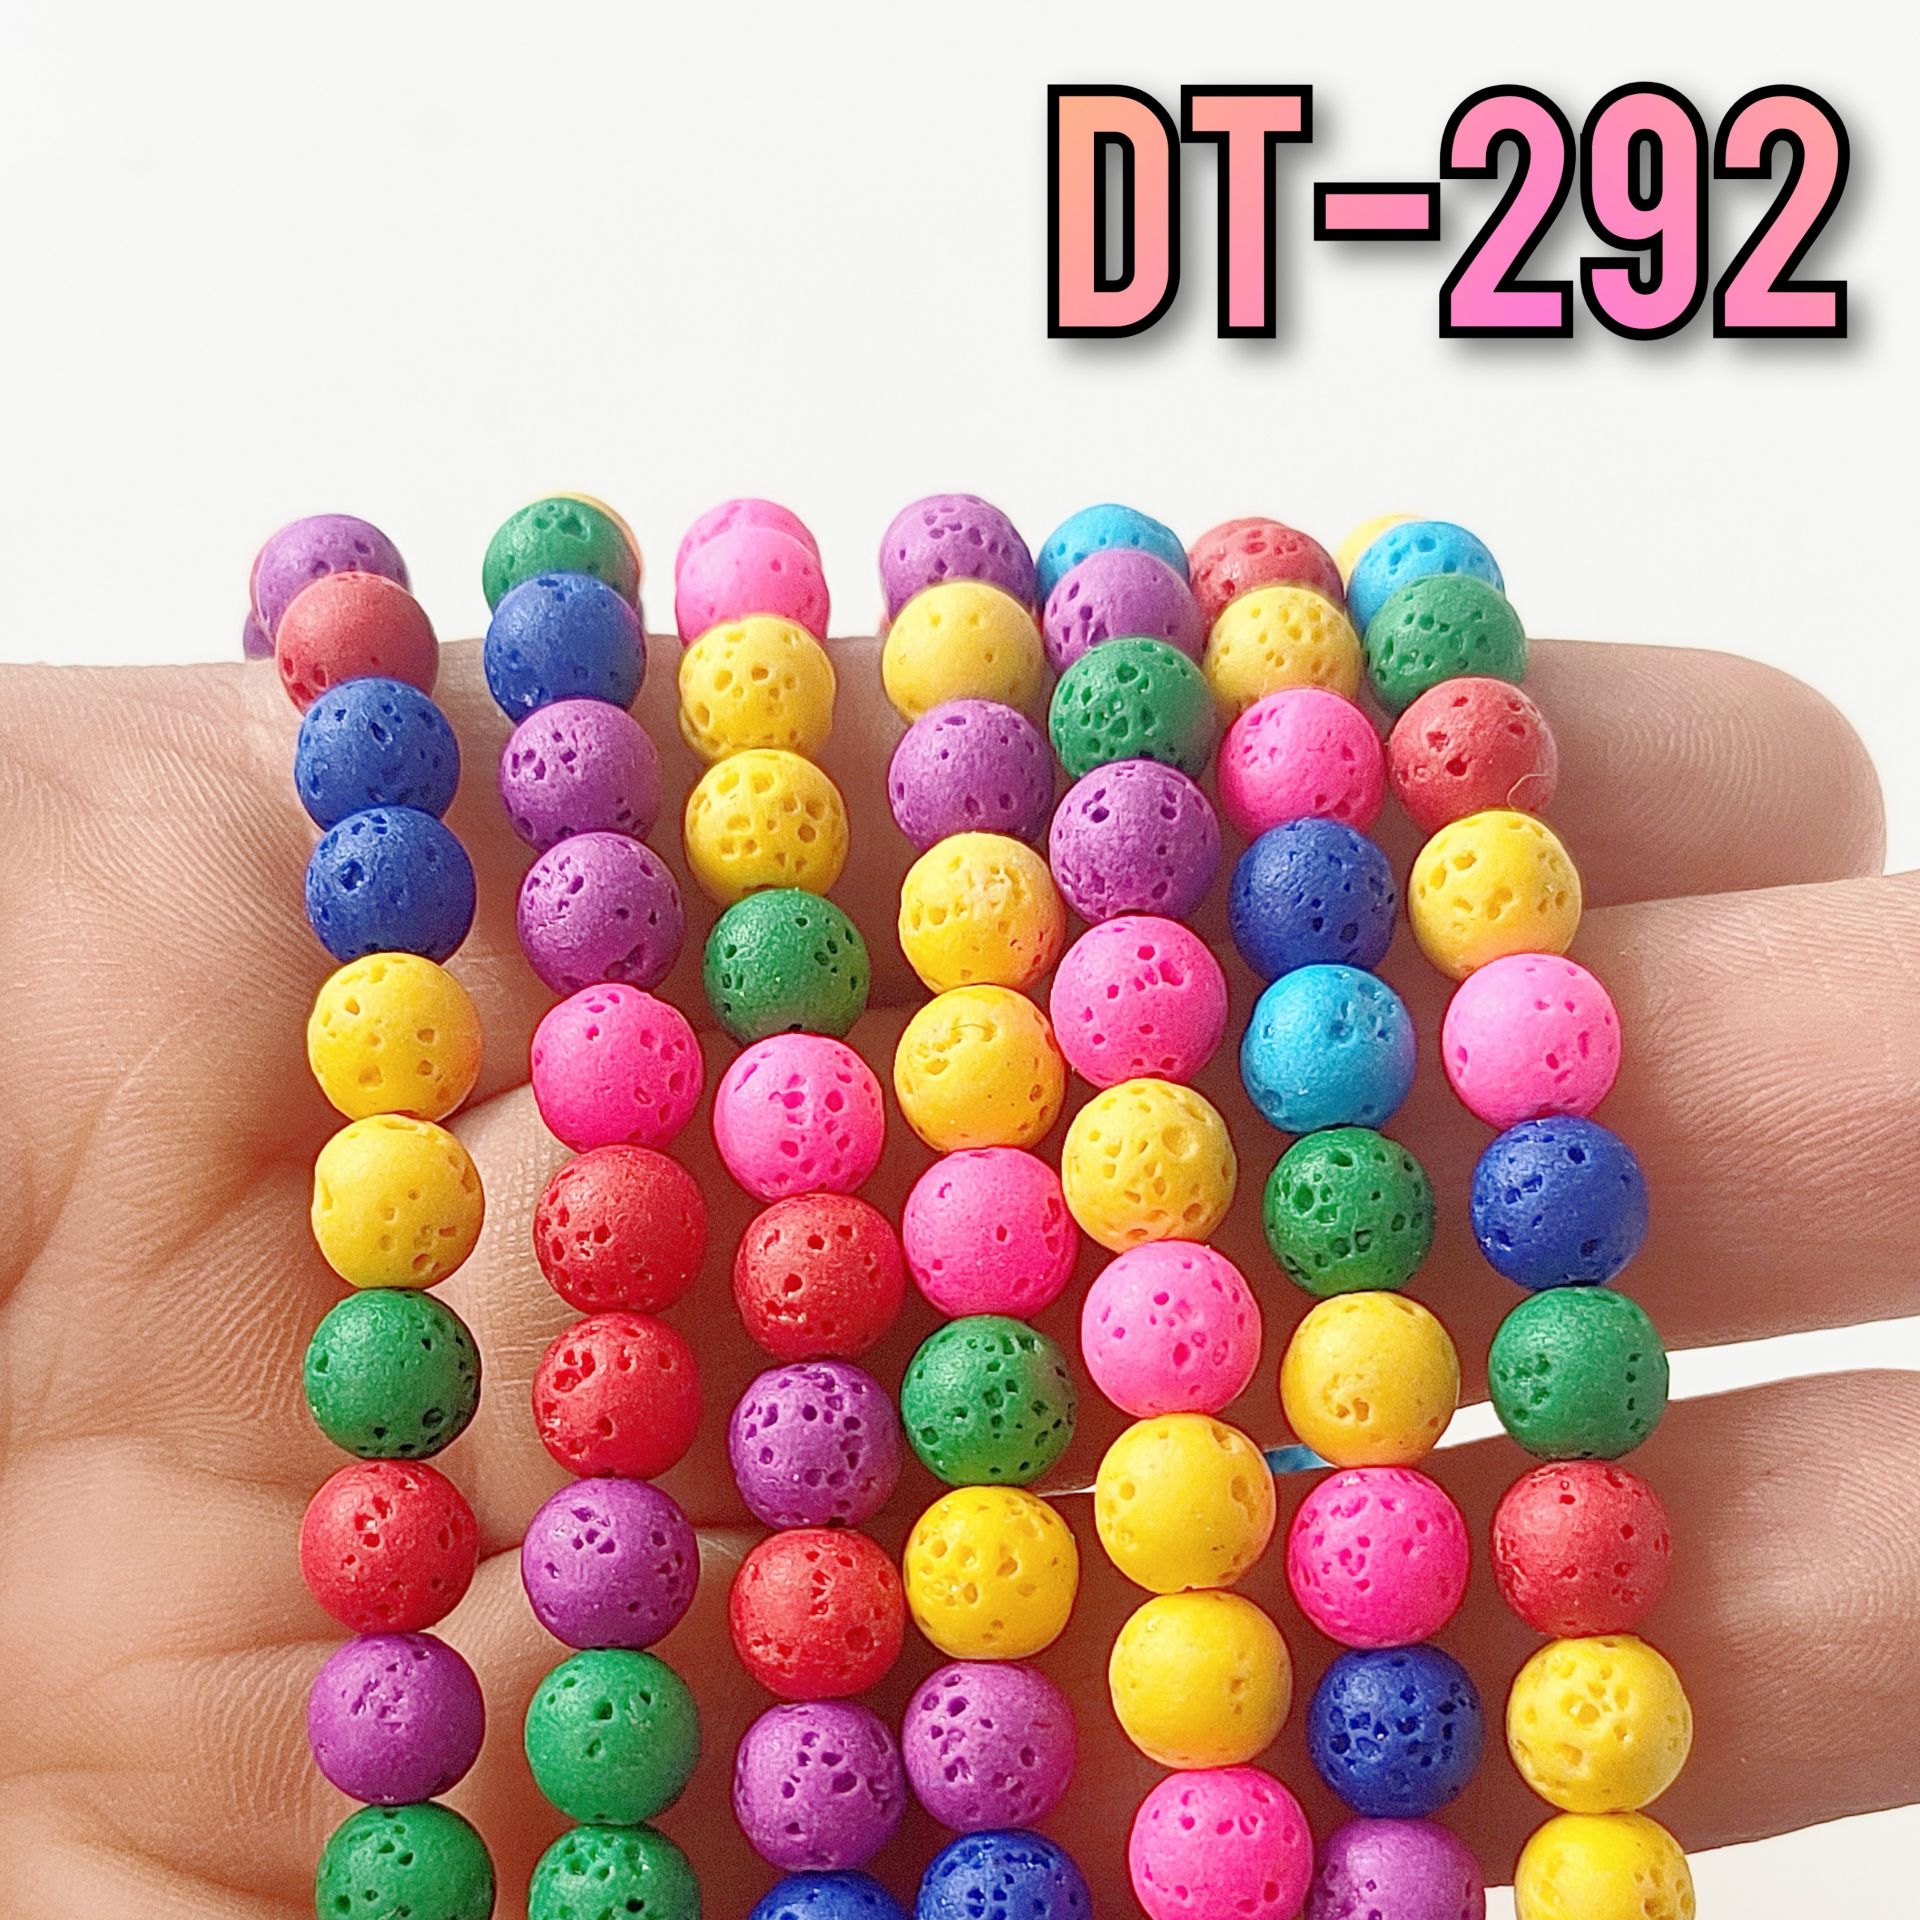 DT-292 Karışık Renk Lav Taşı Canlı Renkler 6 mm